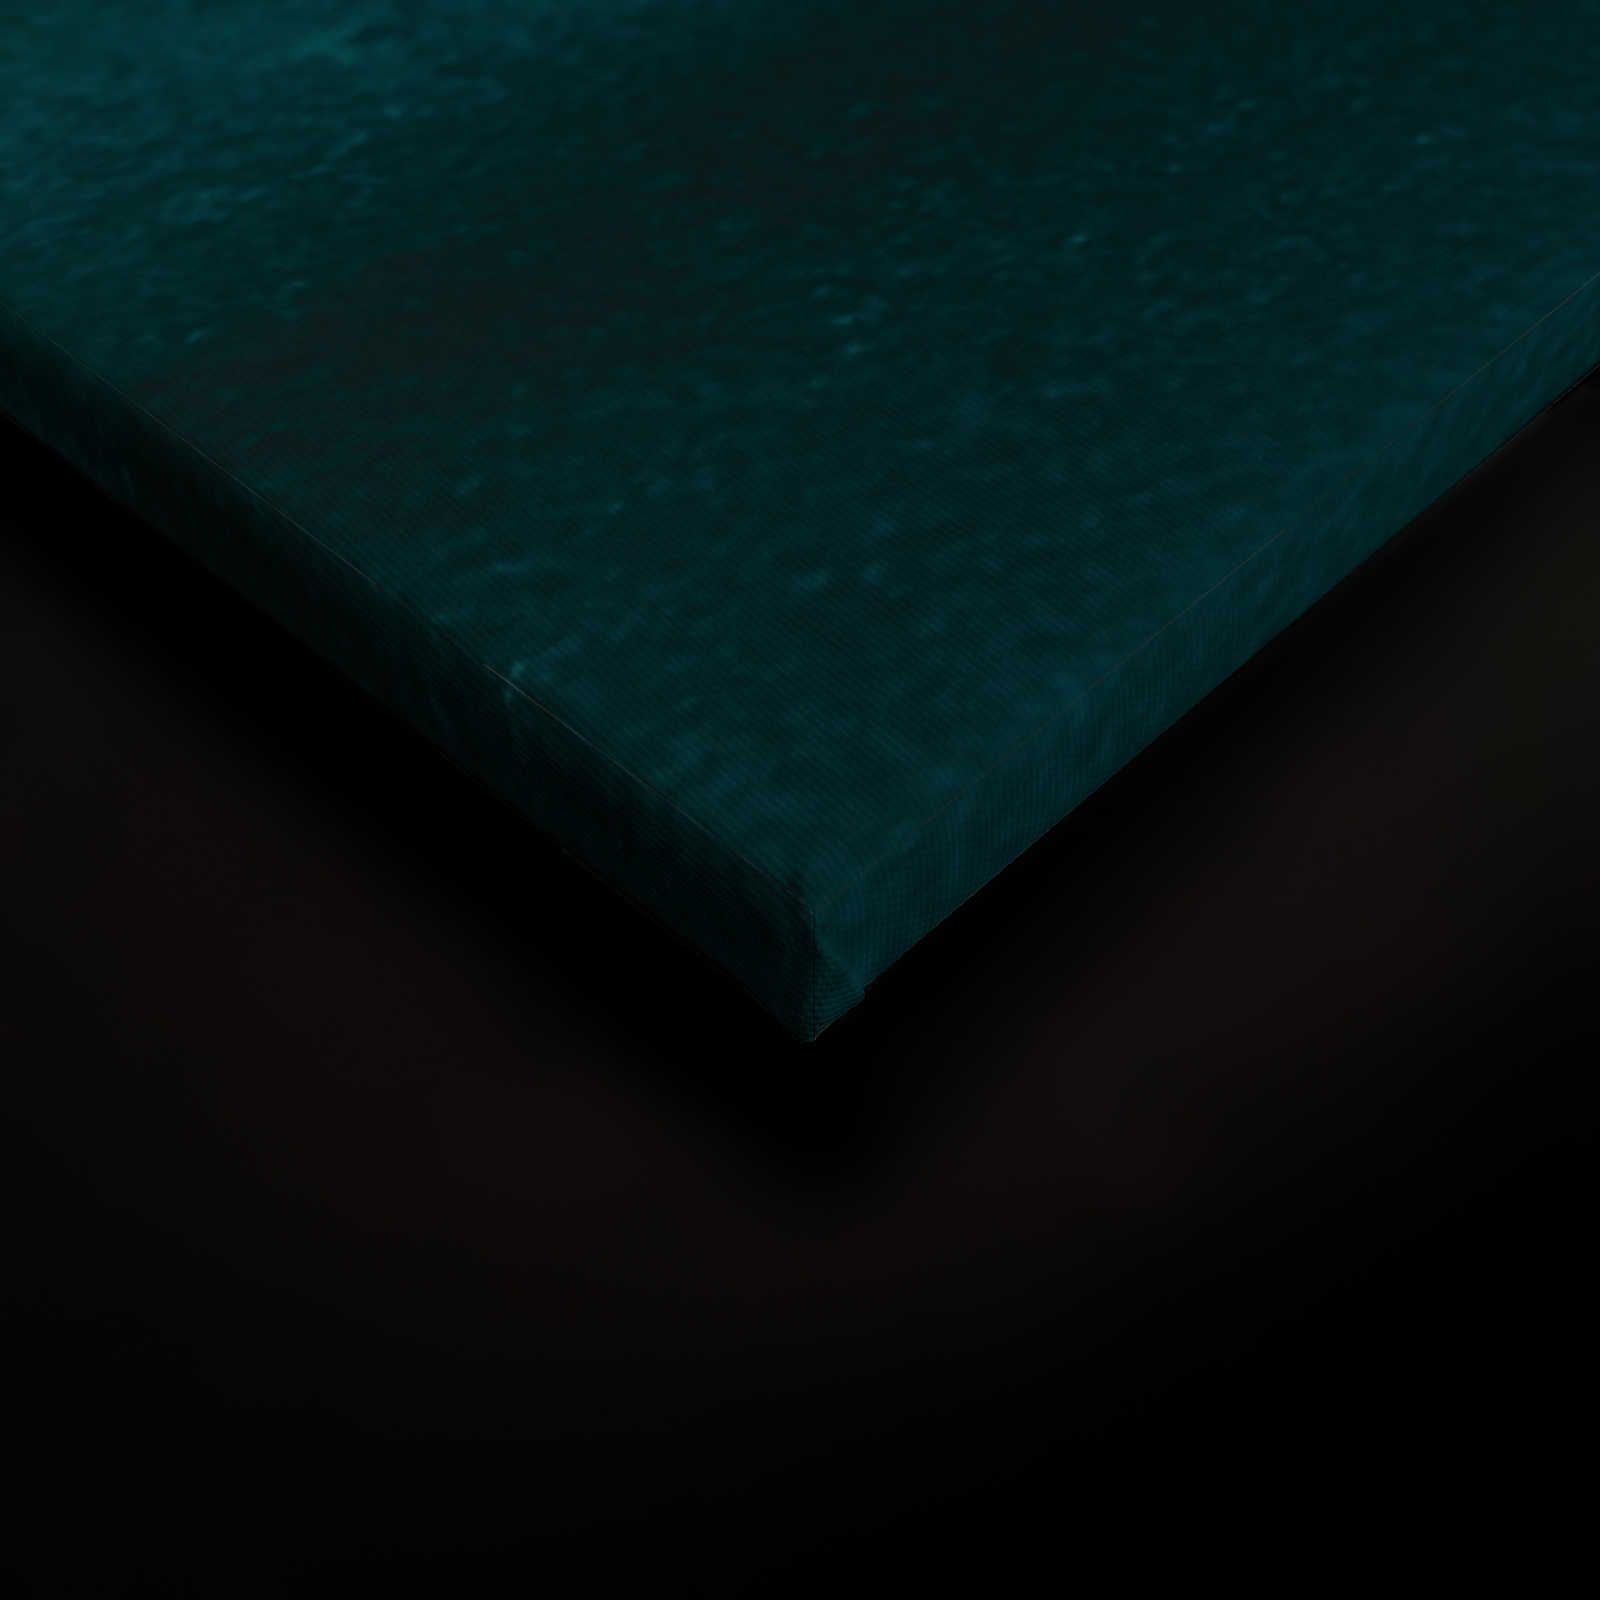             Marée toile avec eau abstraite aquarelle - 0,90 m x 0,60 m
        